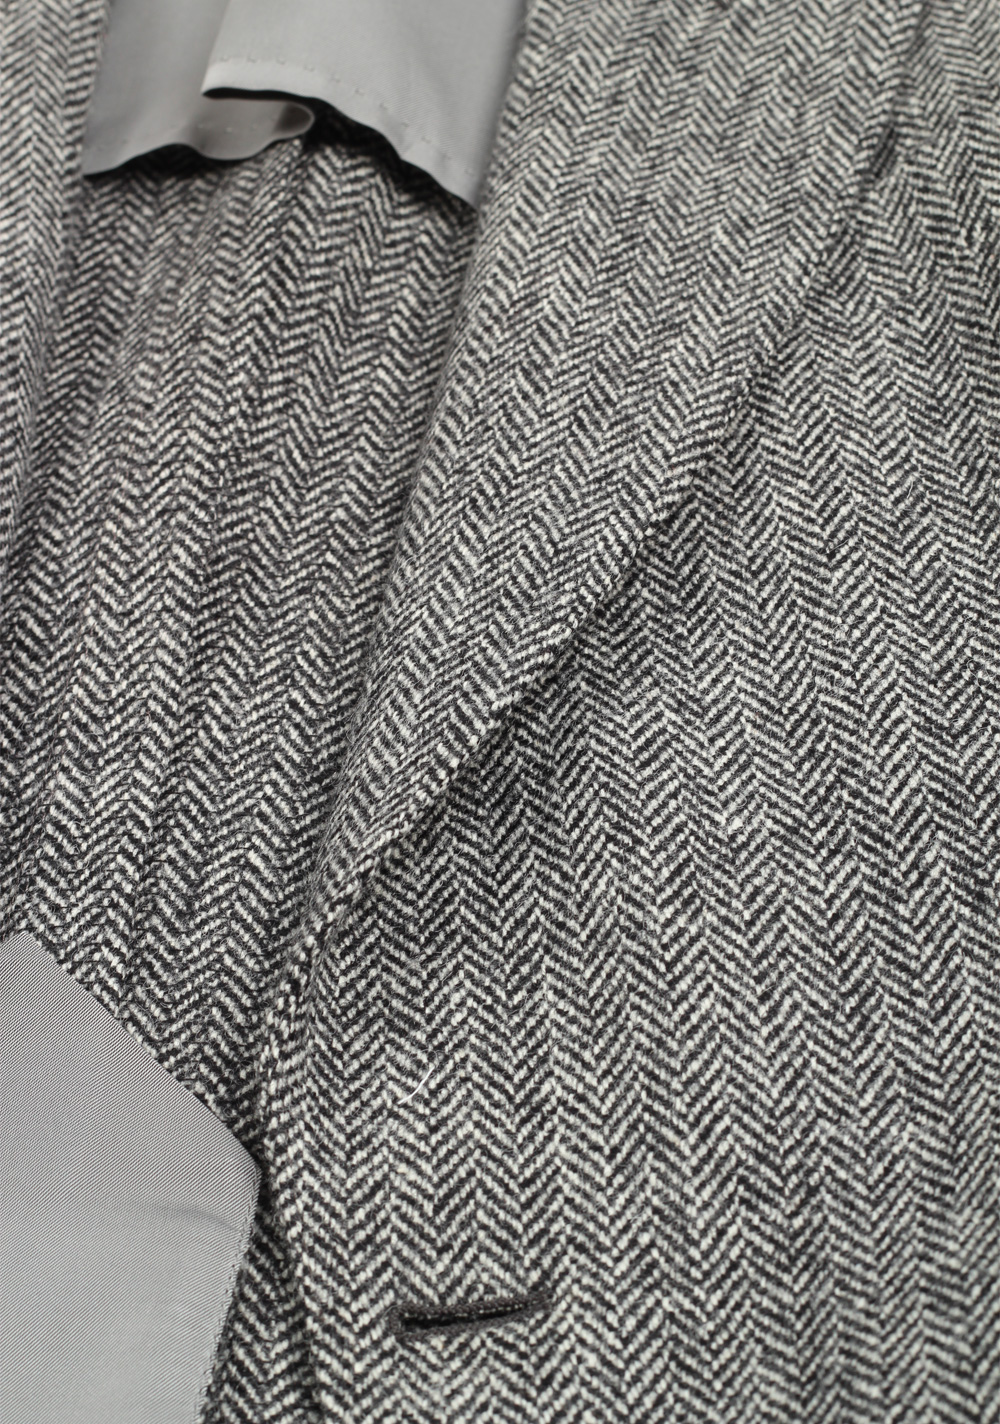 TOM FORD Atticus Gray Herringbone Suit Size 46 / 36R U.S. | Costume Limité